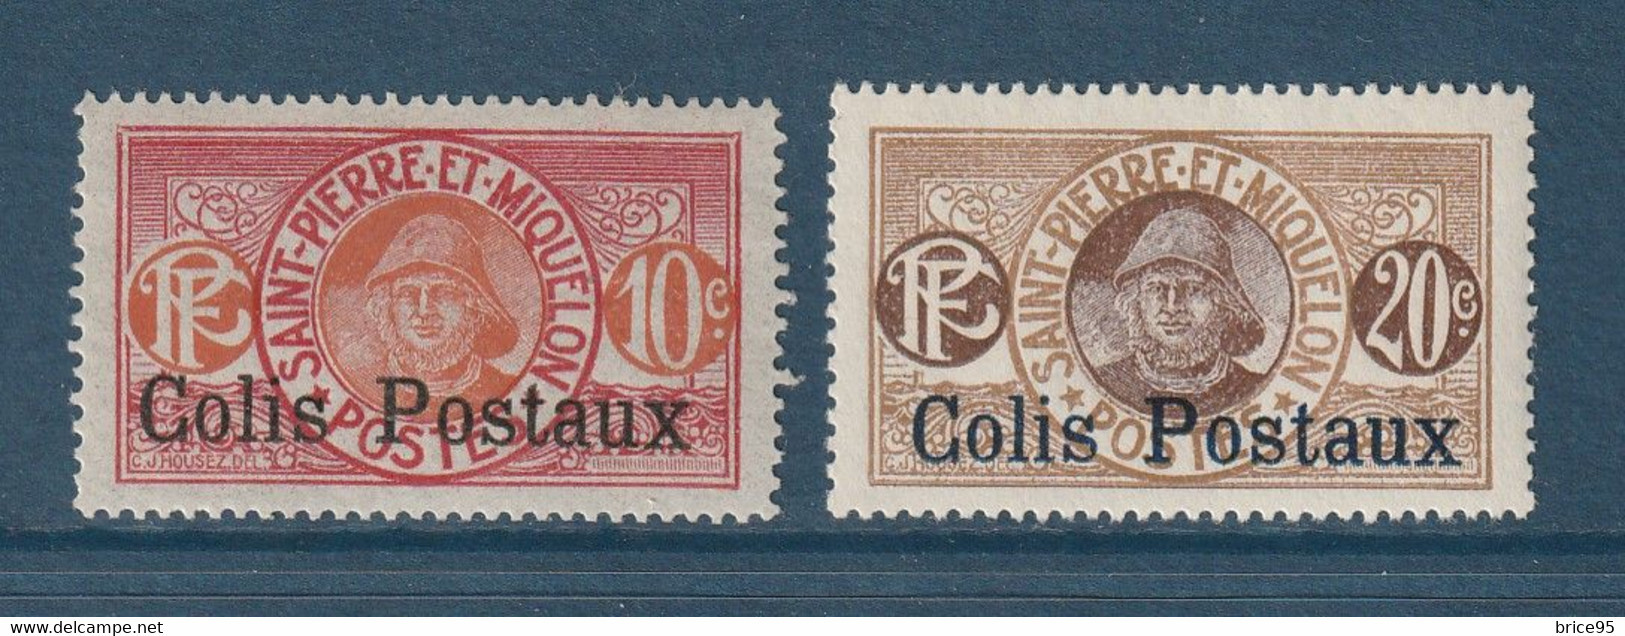 Saint Pierre Et Miquelon - Colis Postaux - YT N° 3 Et 4 * - Neuf Avec Charnière - 1917 à 1925 - Timbres-taxe